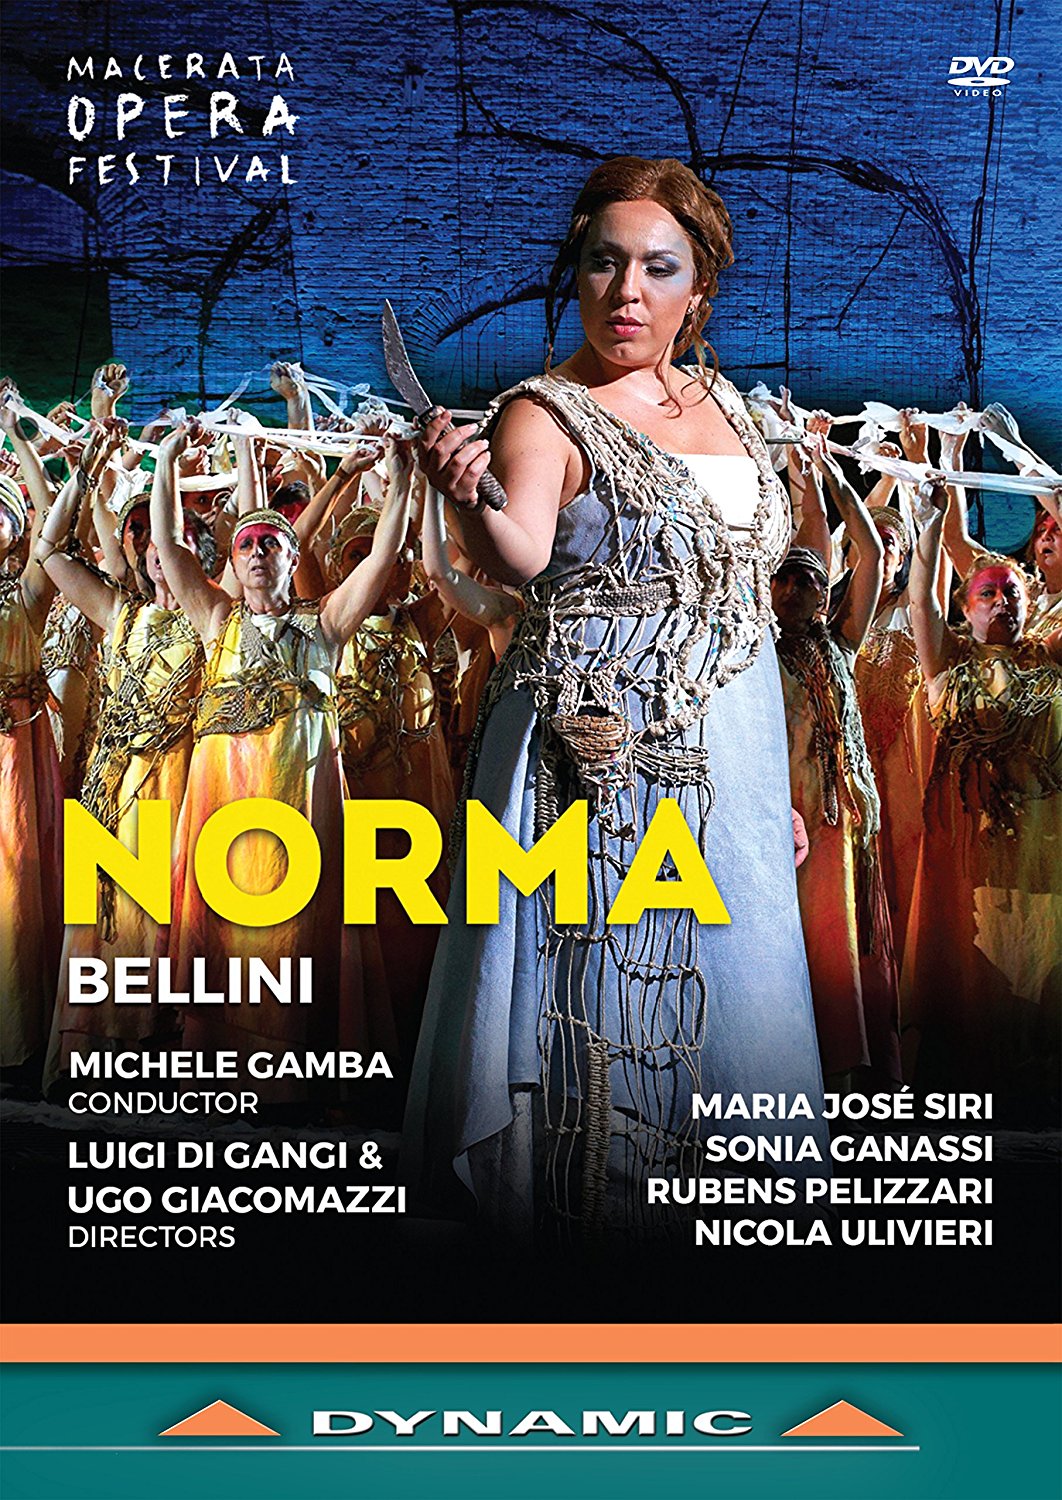 Music Dvd Vincenzo Bellini - Norma NUOVO SIGILLATO, EDIZIONE DEL 15/09/2017 SUBITO DISPONIBILE